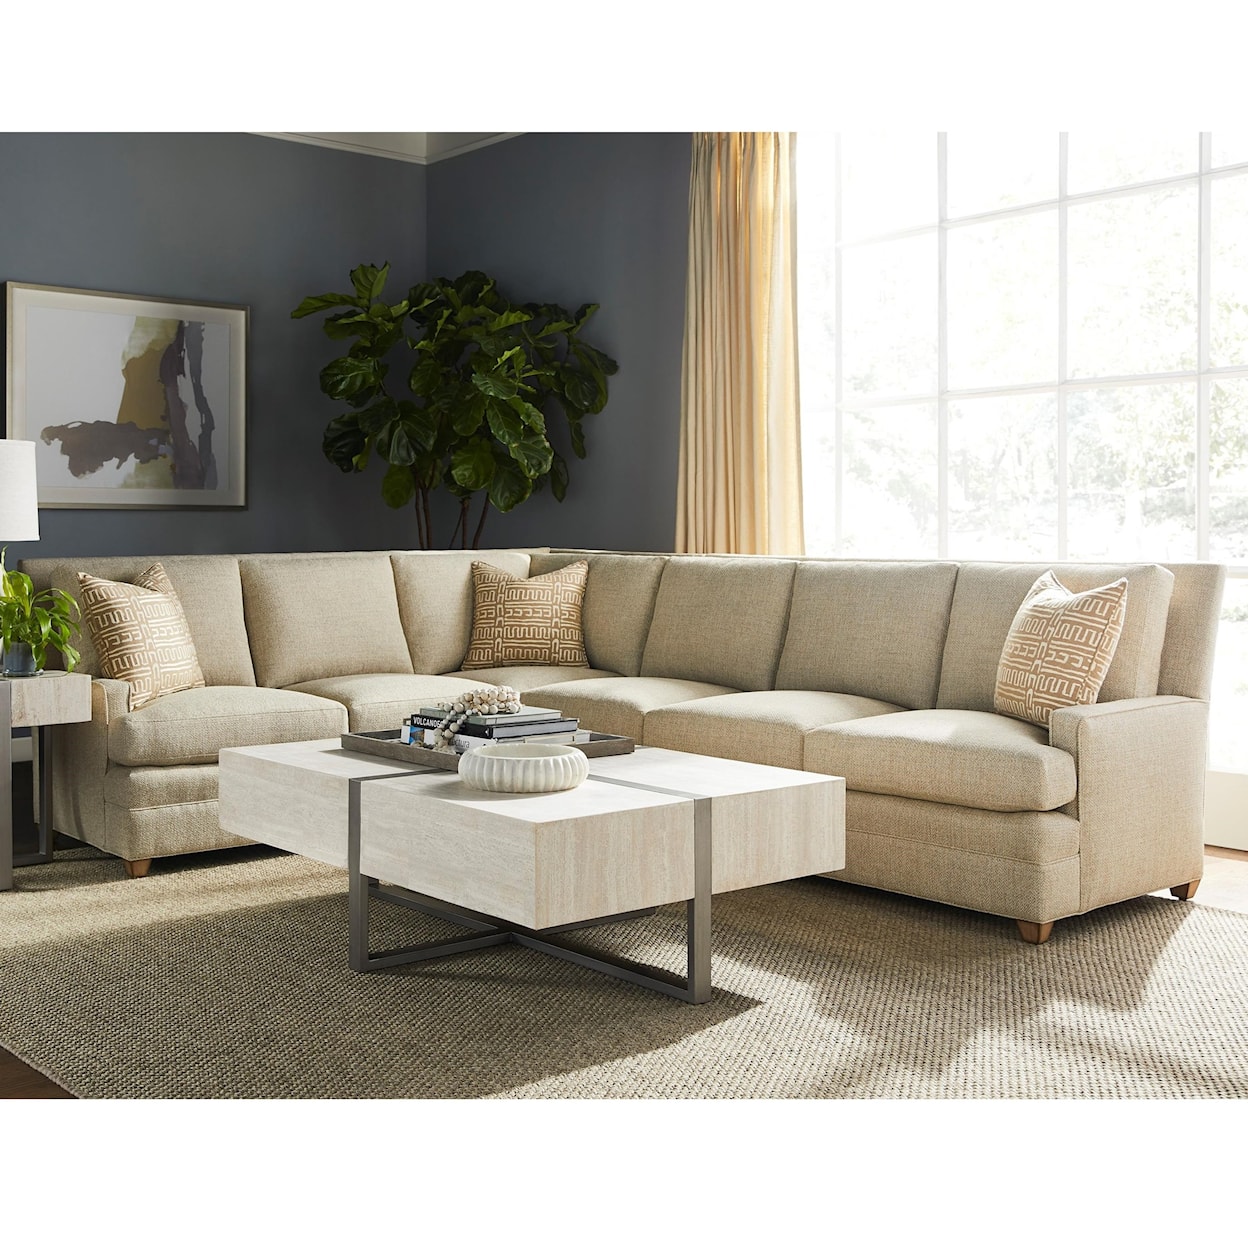 Vanguard Furniture American Bungalow Riverside Sectional Sofa